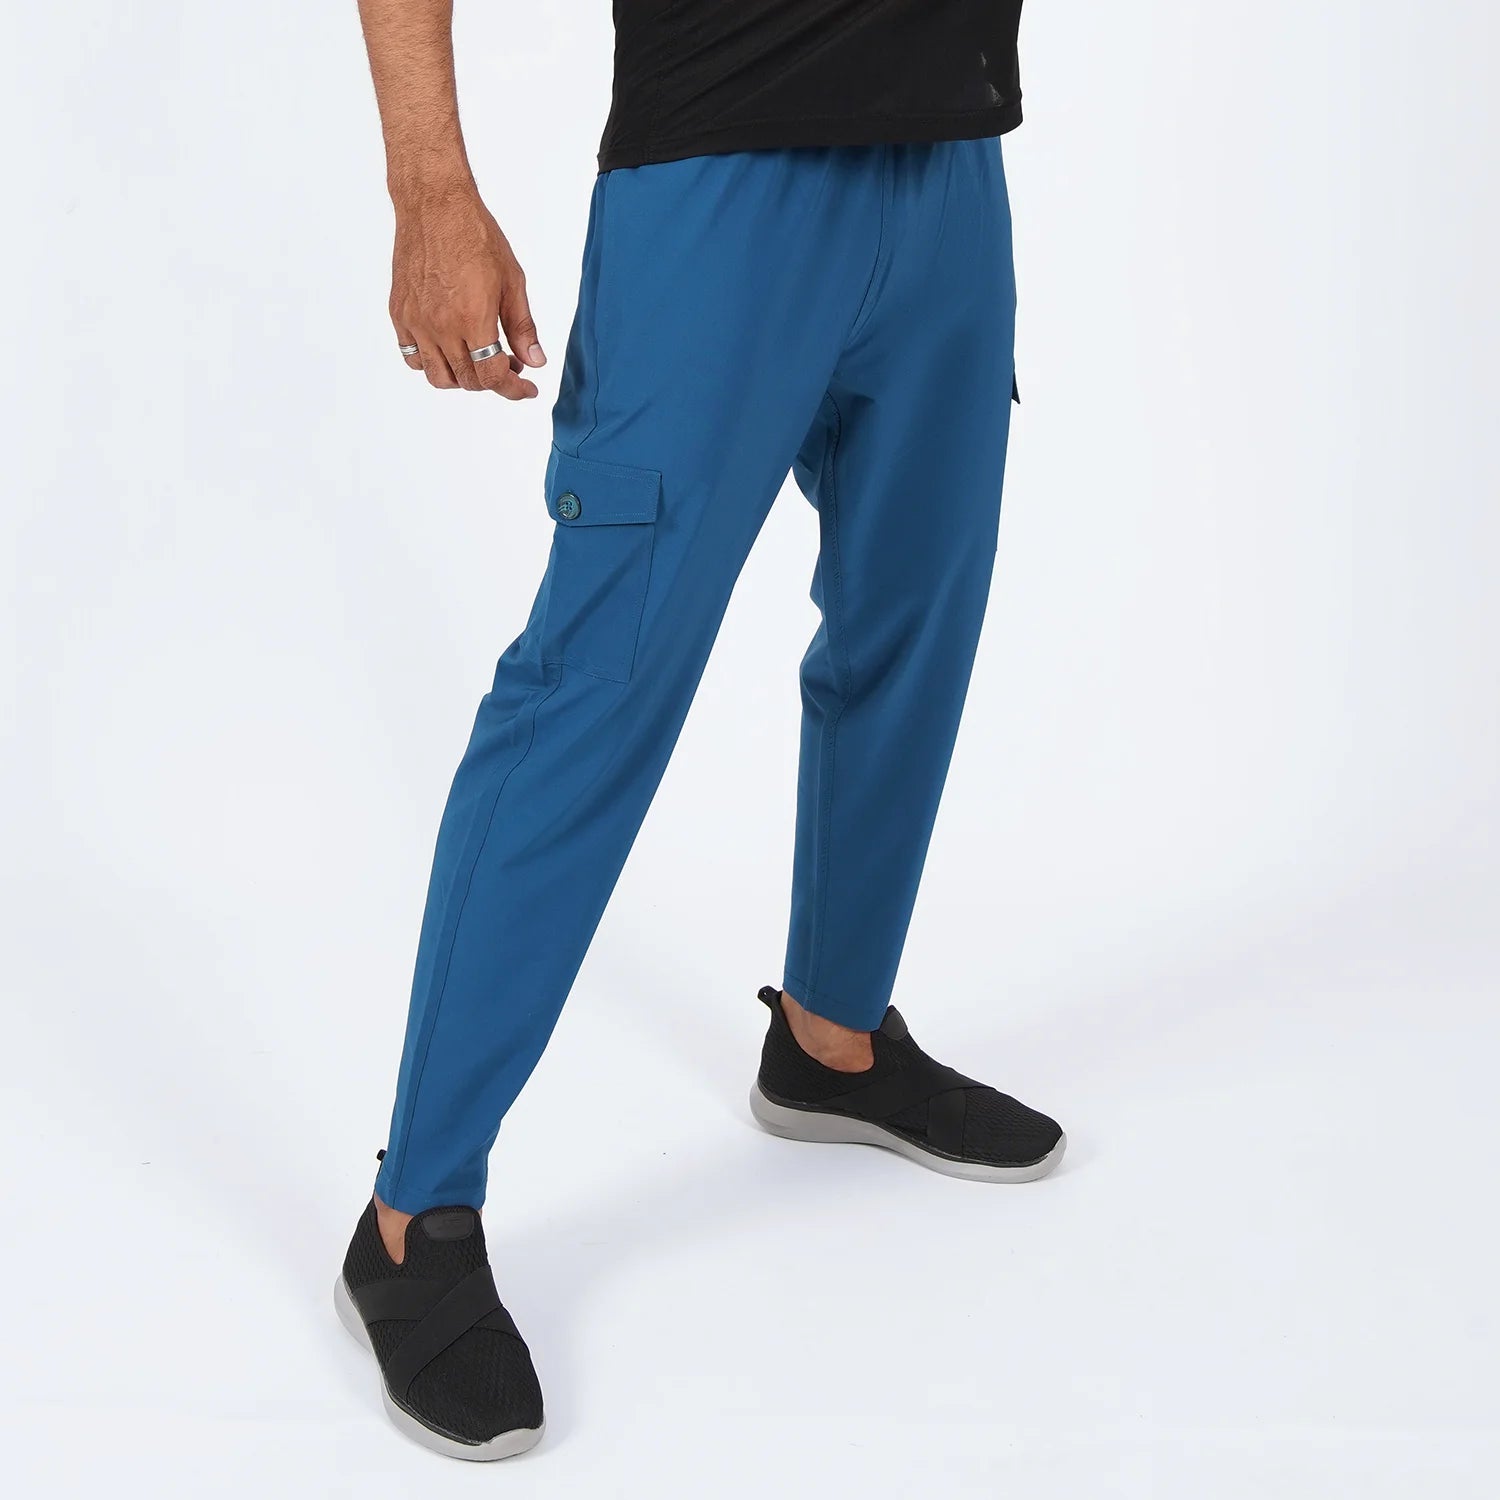 Buy Men Trousers Online - Shop on Carrefour Pakistan